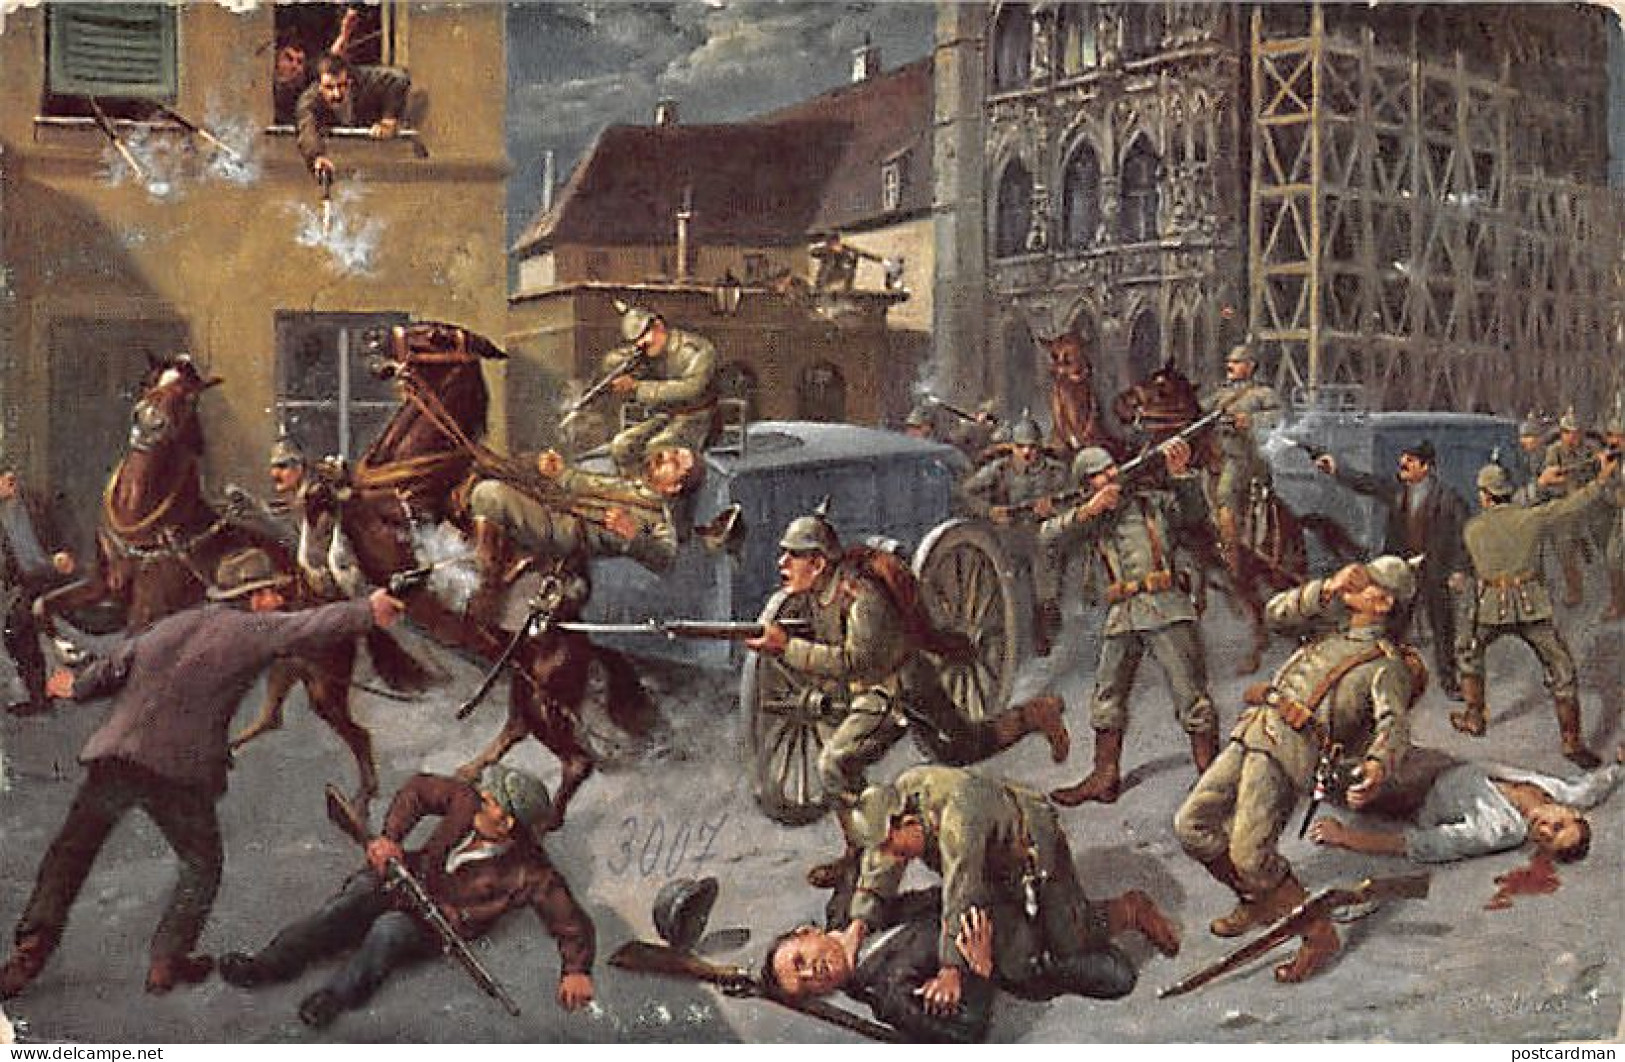 België - LEUVEN (Vl. Br.) Overval Door Sluipschutters In Leuven Op 25 Augustus 1914 - Leuven